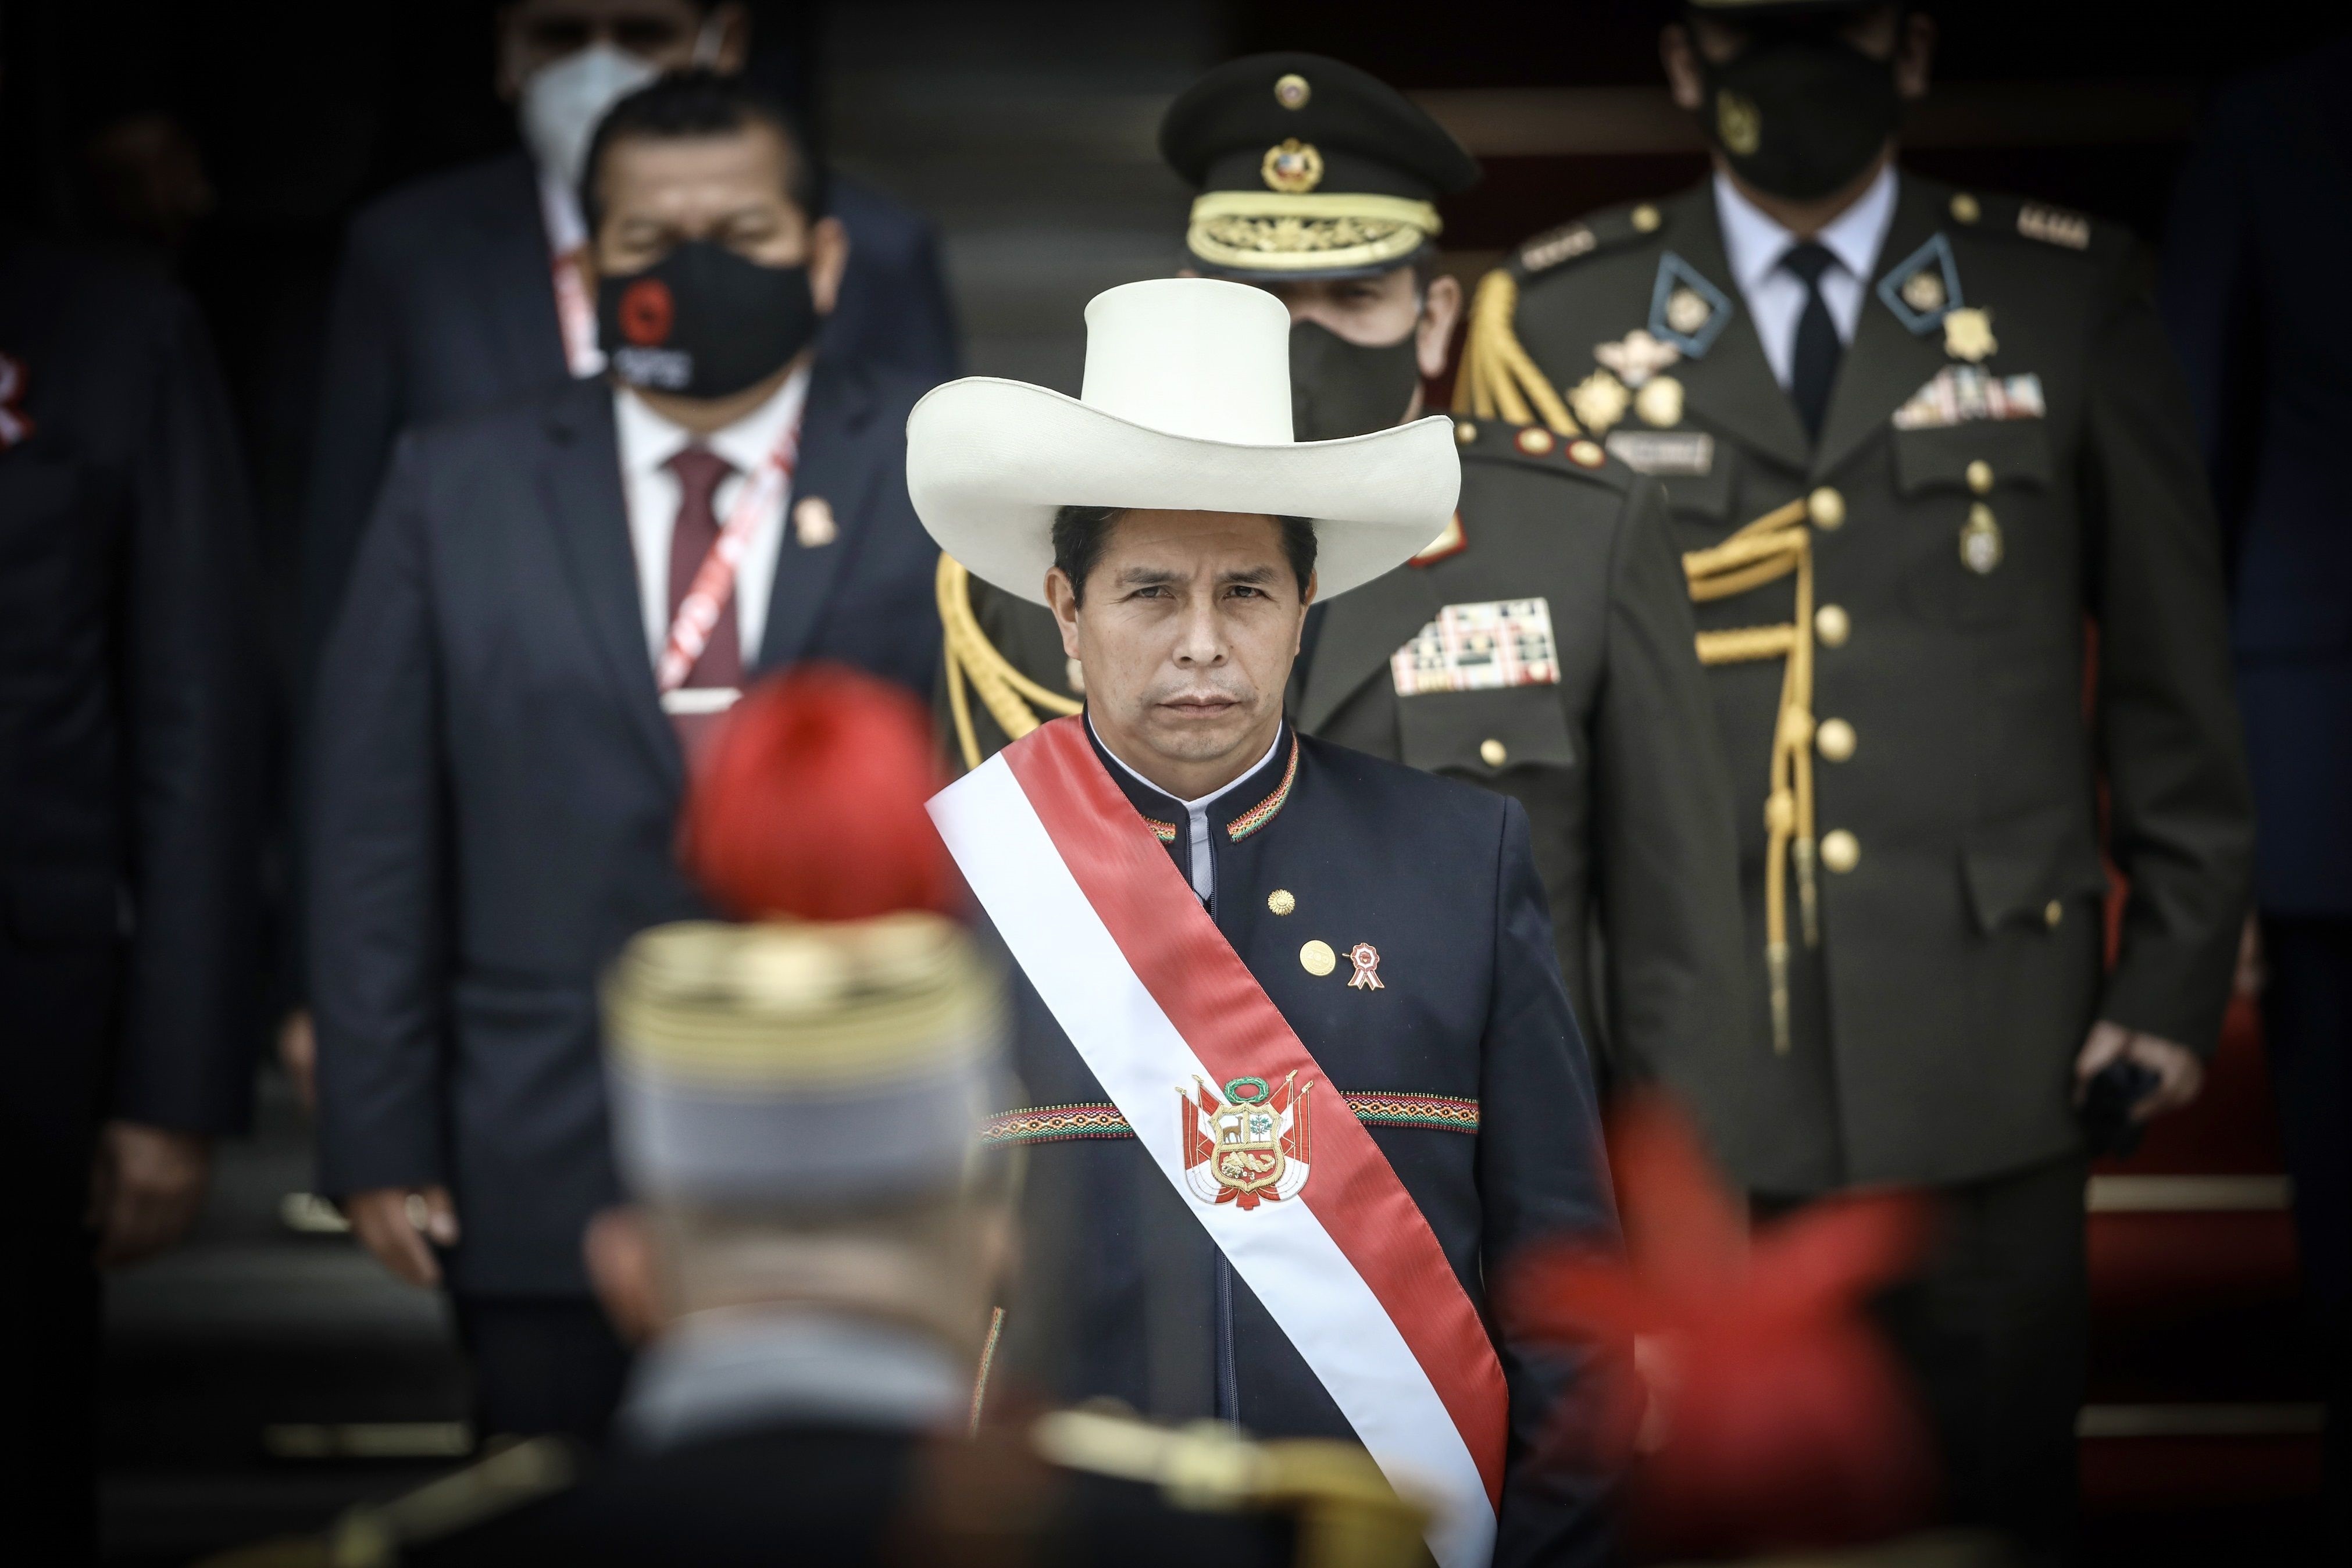 Allanaron oficinas de Perú Libre, partido del presidente Castillo, por investigación sobre lavado de dinero